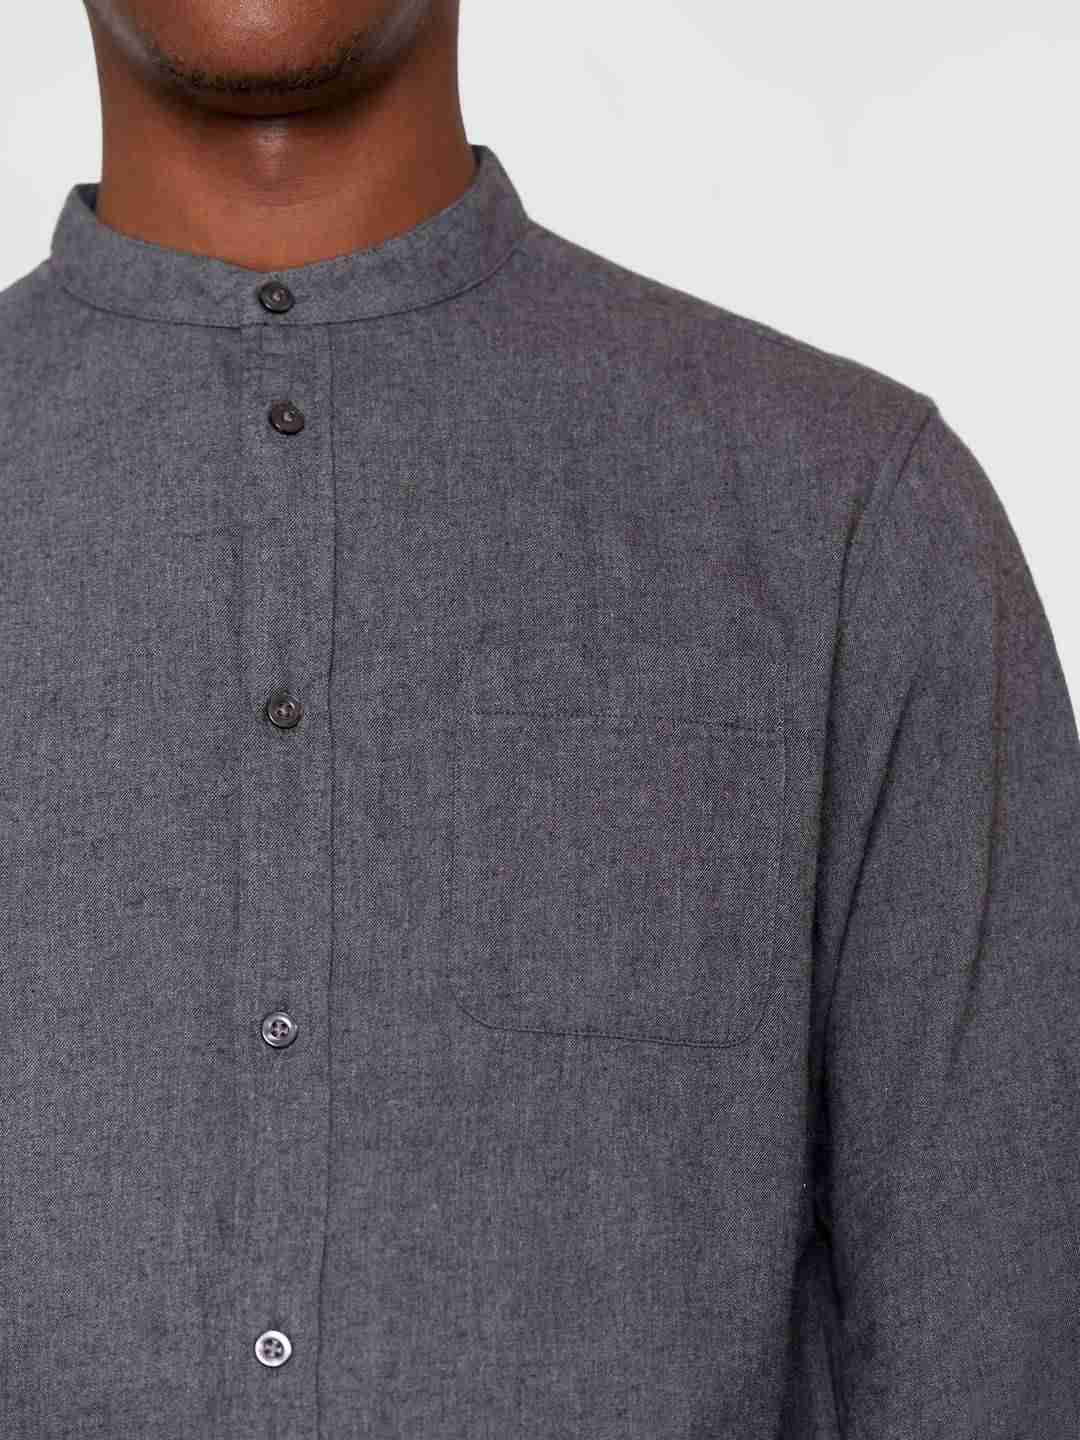 Hemd Regular fit melangé flannel stand collar dark grey melange von KnowledgeCotton Apparel